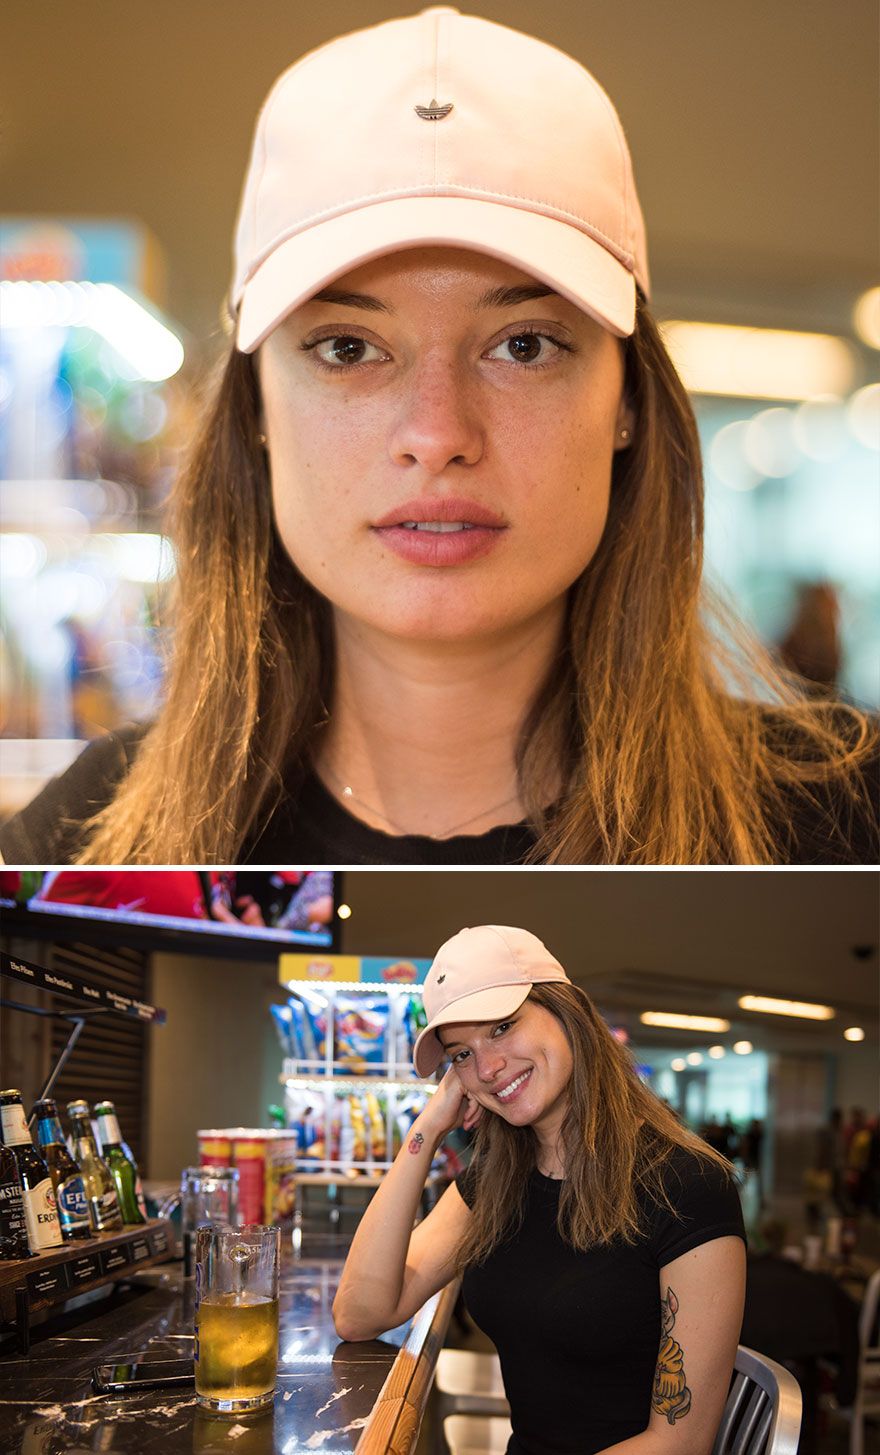 Je travaille à l’aéroport et photographie des personnes uniques du monde entier (44 photos)